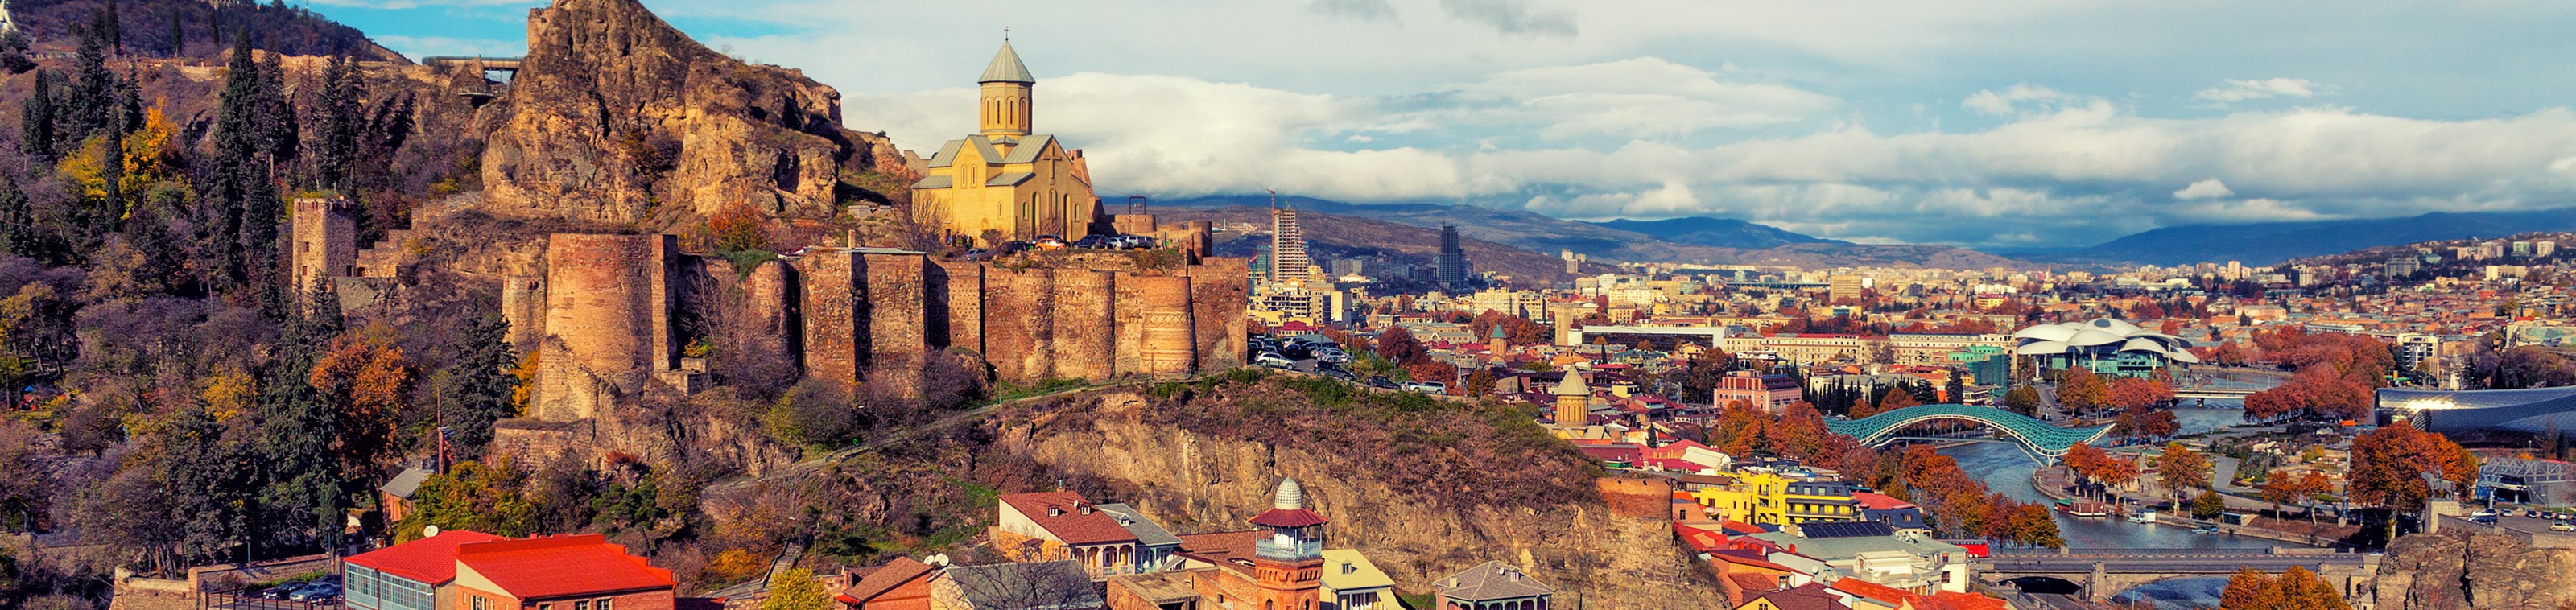 Op zoek naar de wortels van het christendom en de ongerepte natuur in de Kaukasus